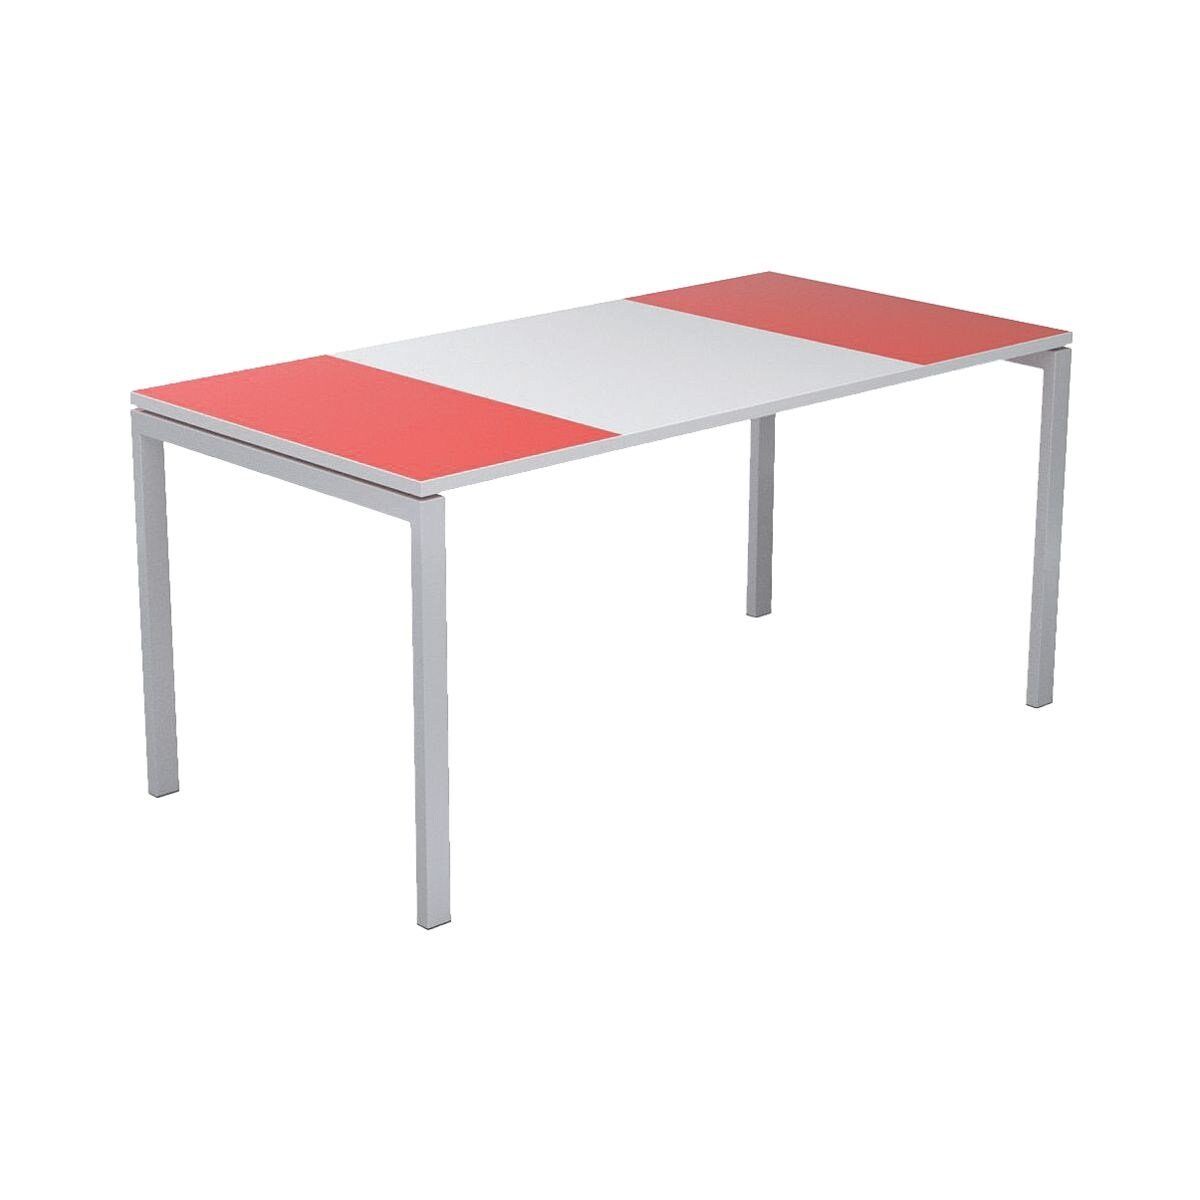 EASYOFFICE Schreibtisch easyOffice, mit und Außenflächen weiß/rot farbigen ABS-Kanten